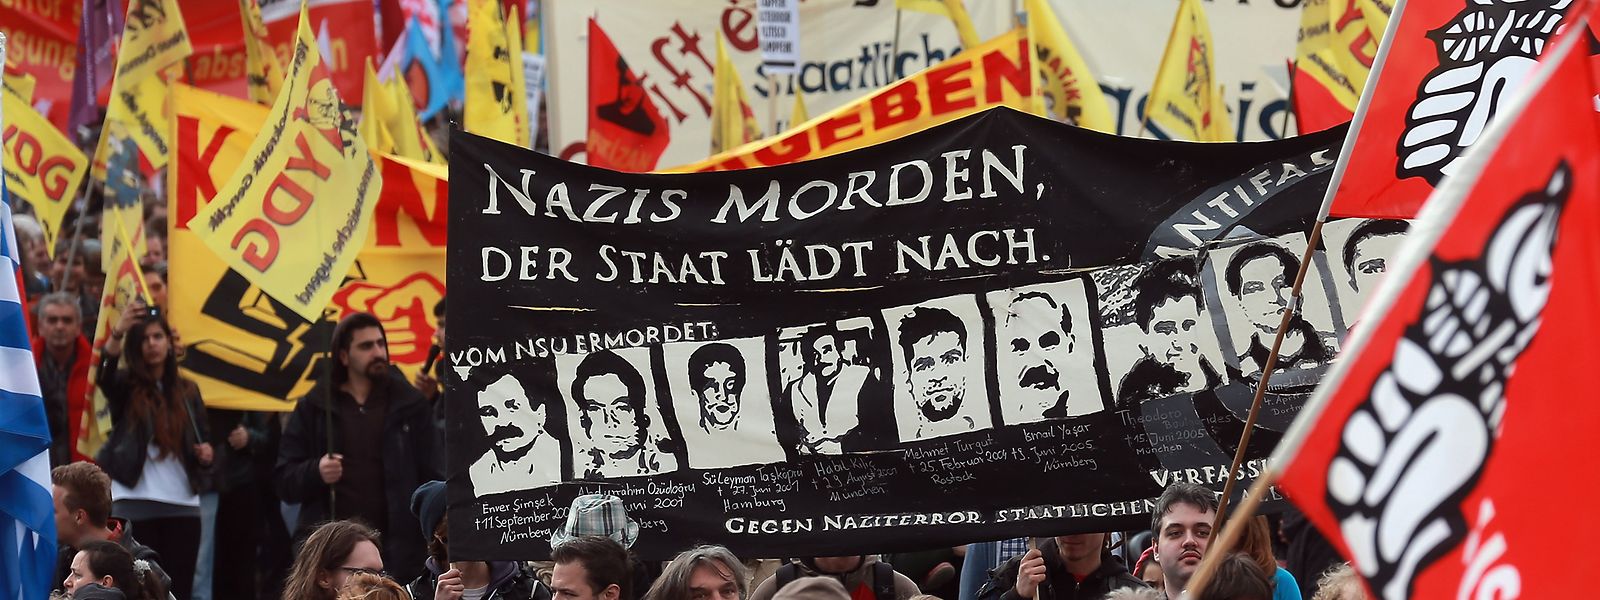 Dieses Archivfoto zeigt eine Demonstration gegen rechte Gewalt in München anlässlich des Auftakts des NSU-Gerichtsprozesses im April 2013.